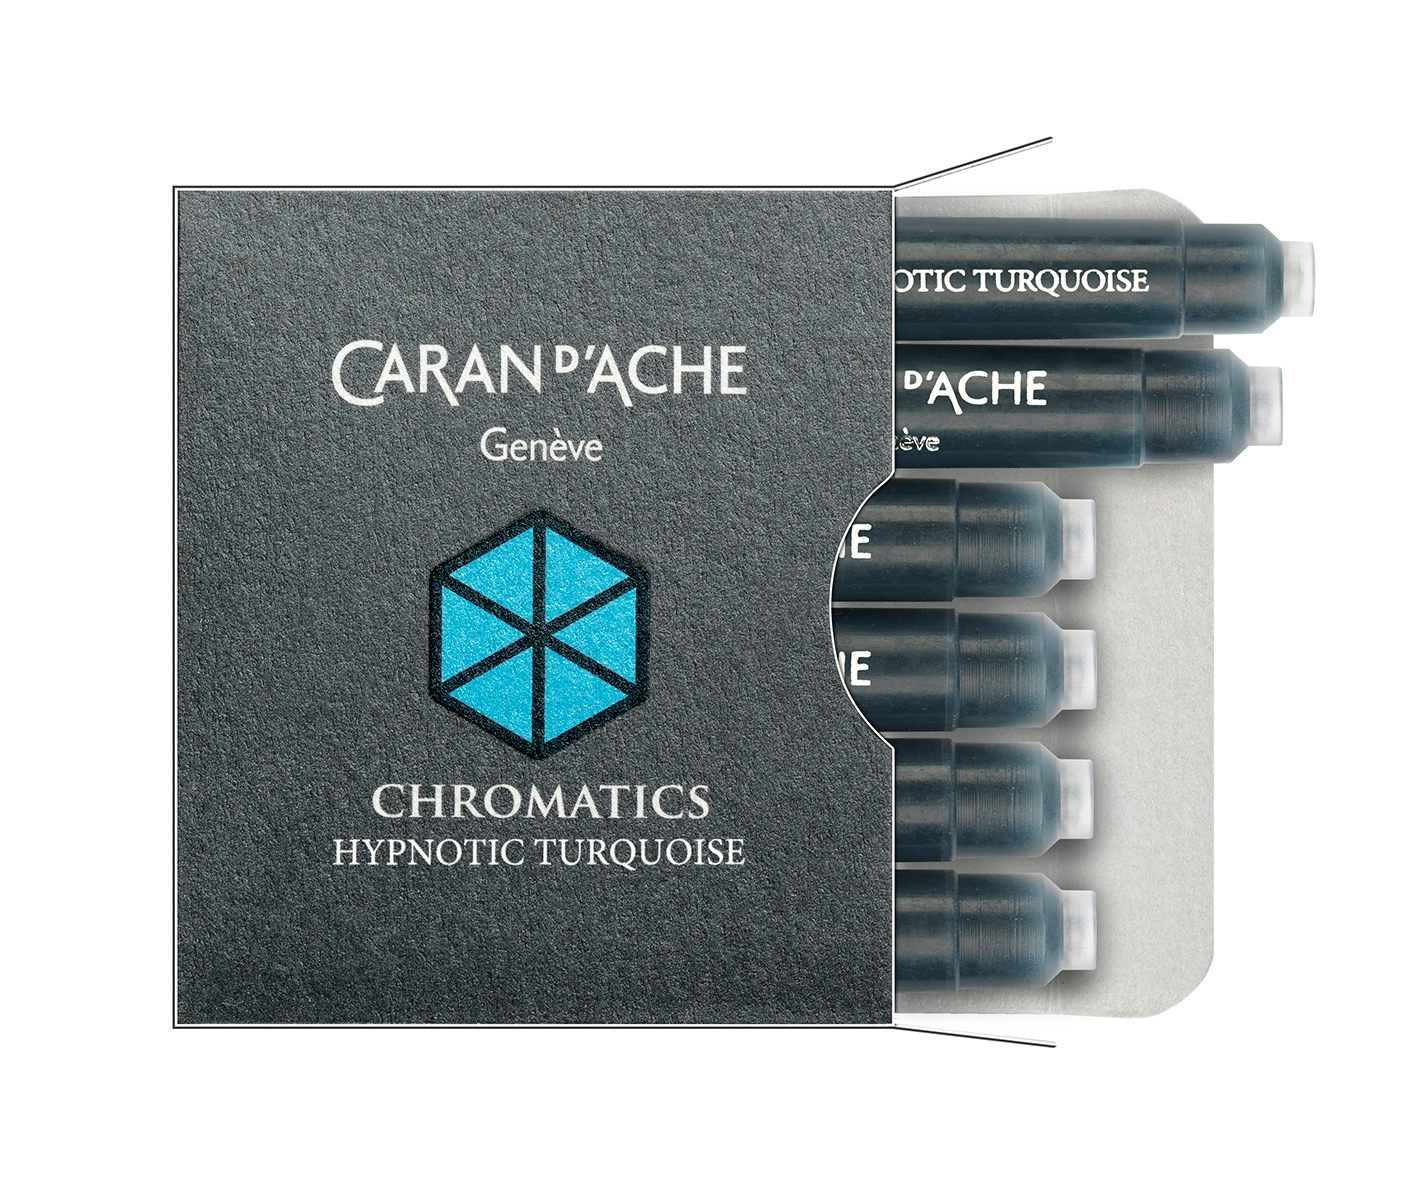 CARAN D'ACHE Cartouche d'encre 8021.191 Hypnotic Turquoise 6 pcs.